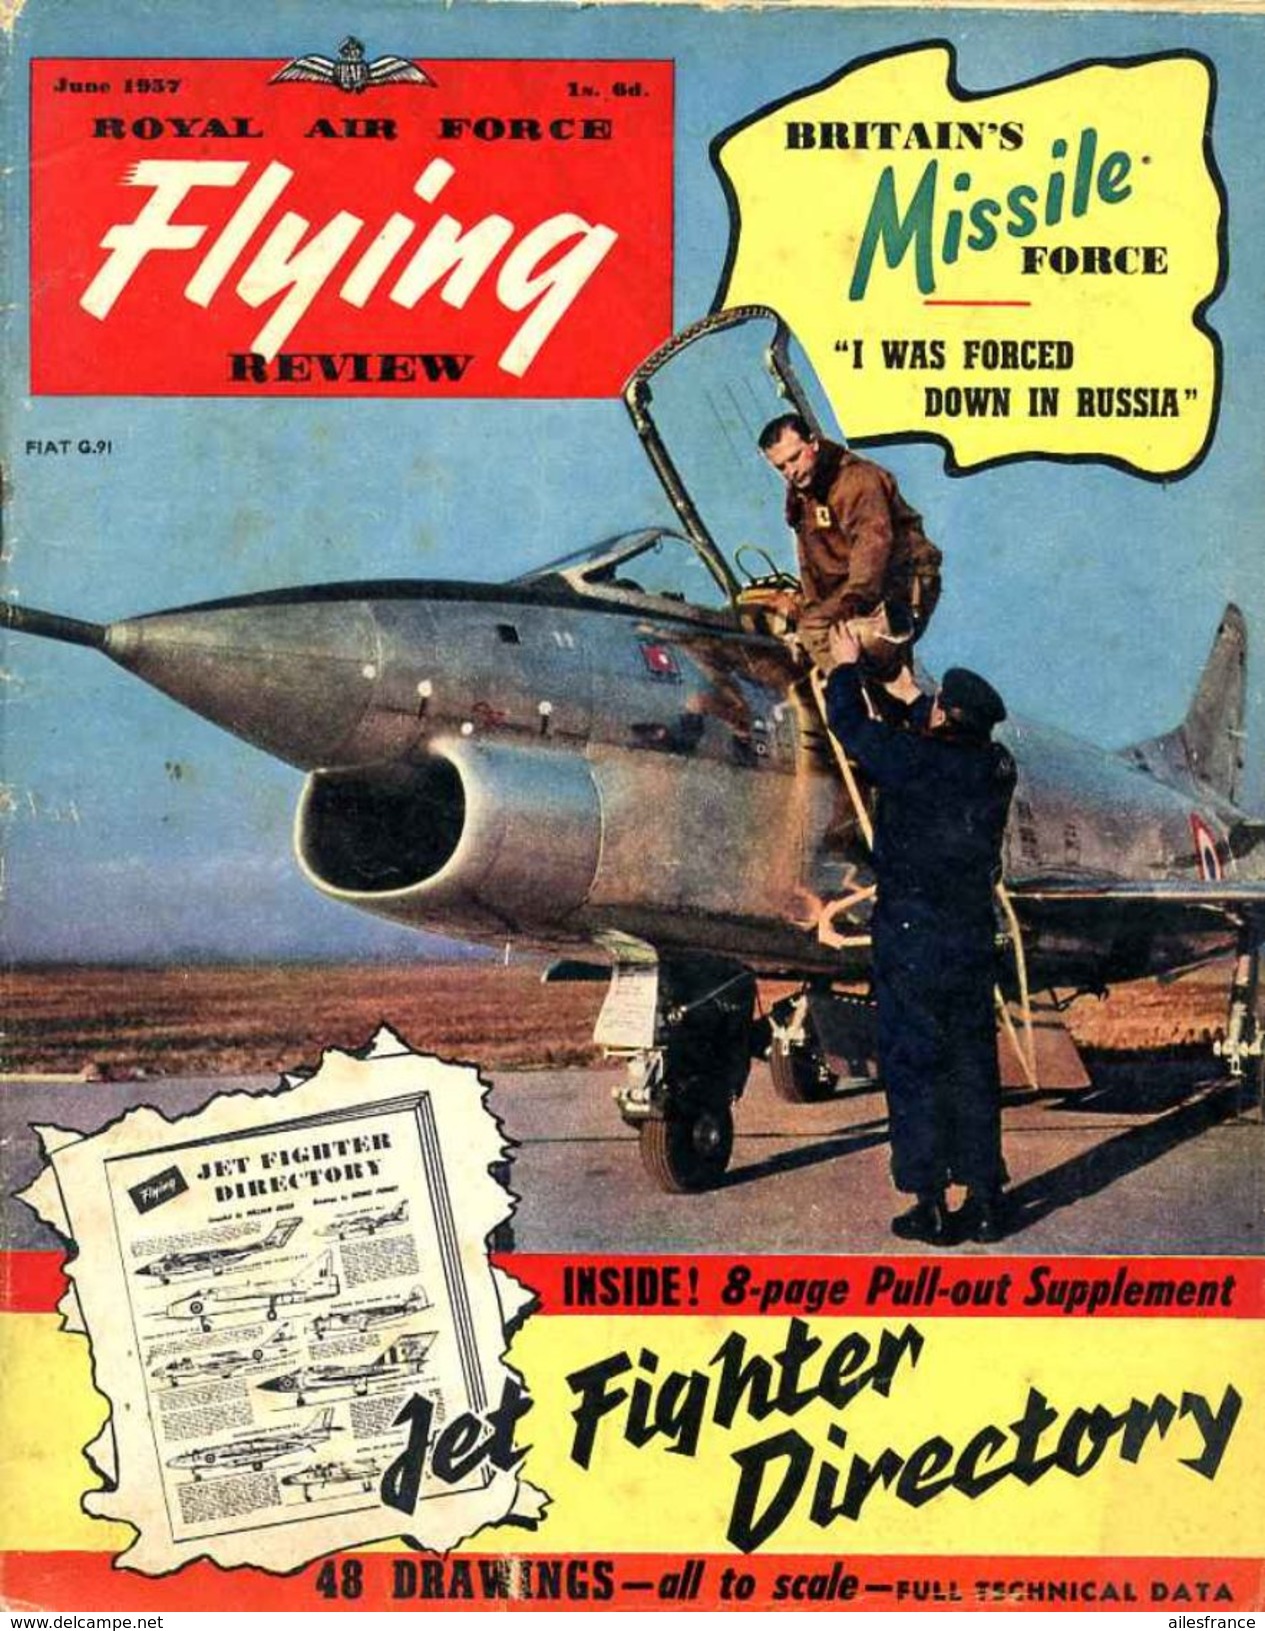 Royal Air Force Flying Revue Vol XII, N°10 June 1957 - Militair / Oorlog